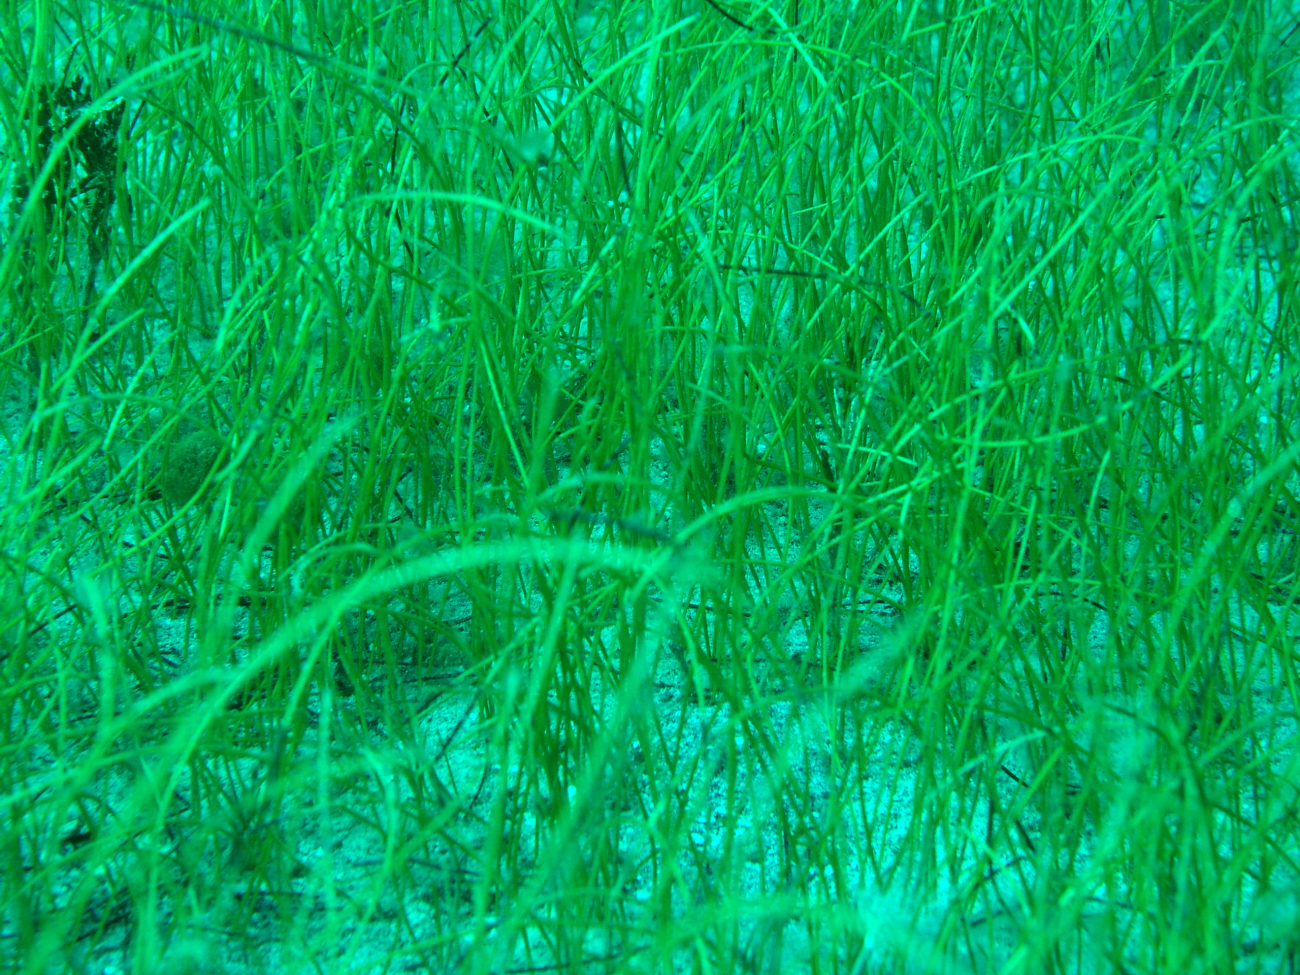 Manatee grass (Syringodium isoetifolium)